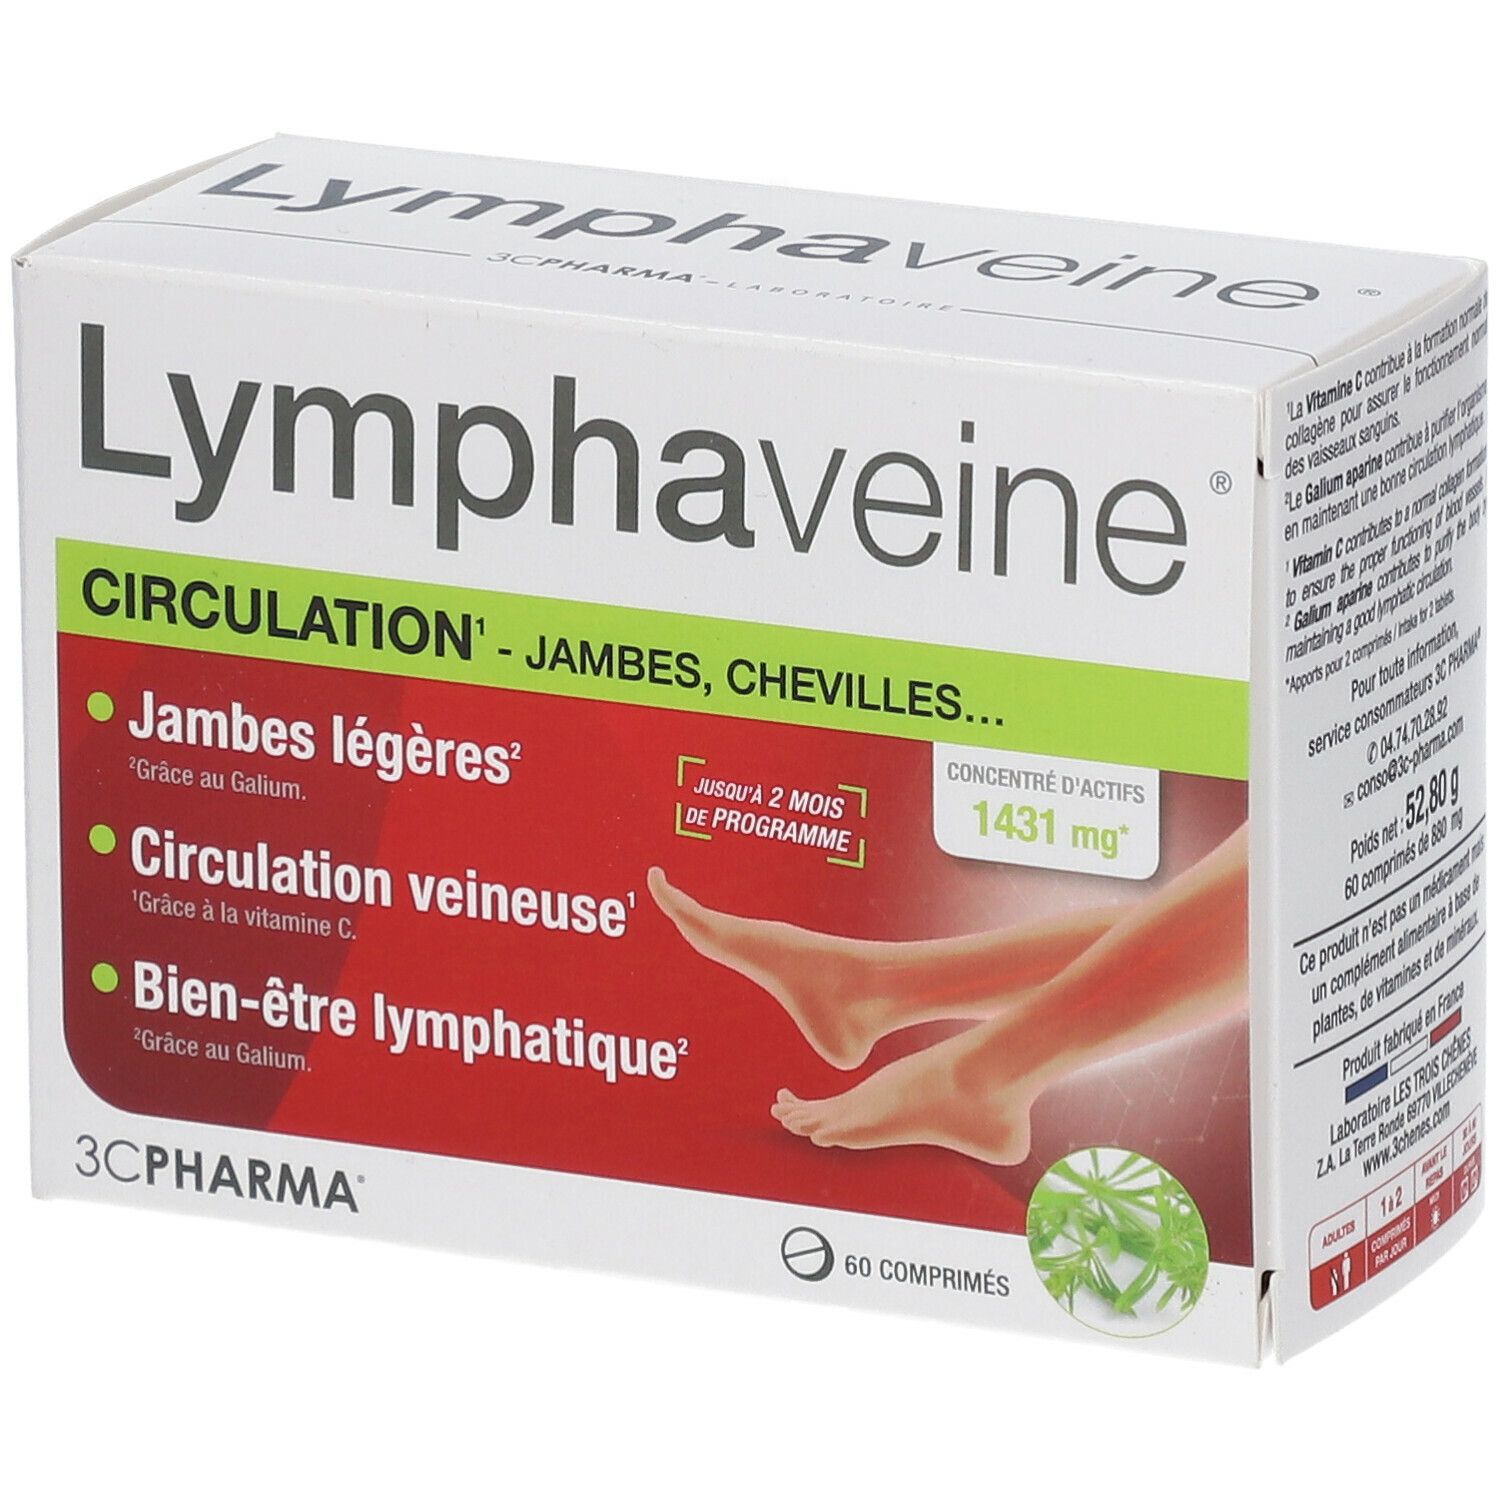 3C Pharma Lymphaveine